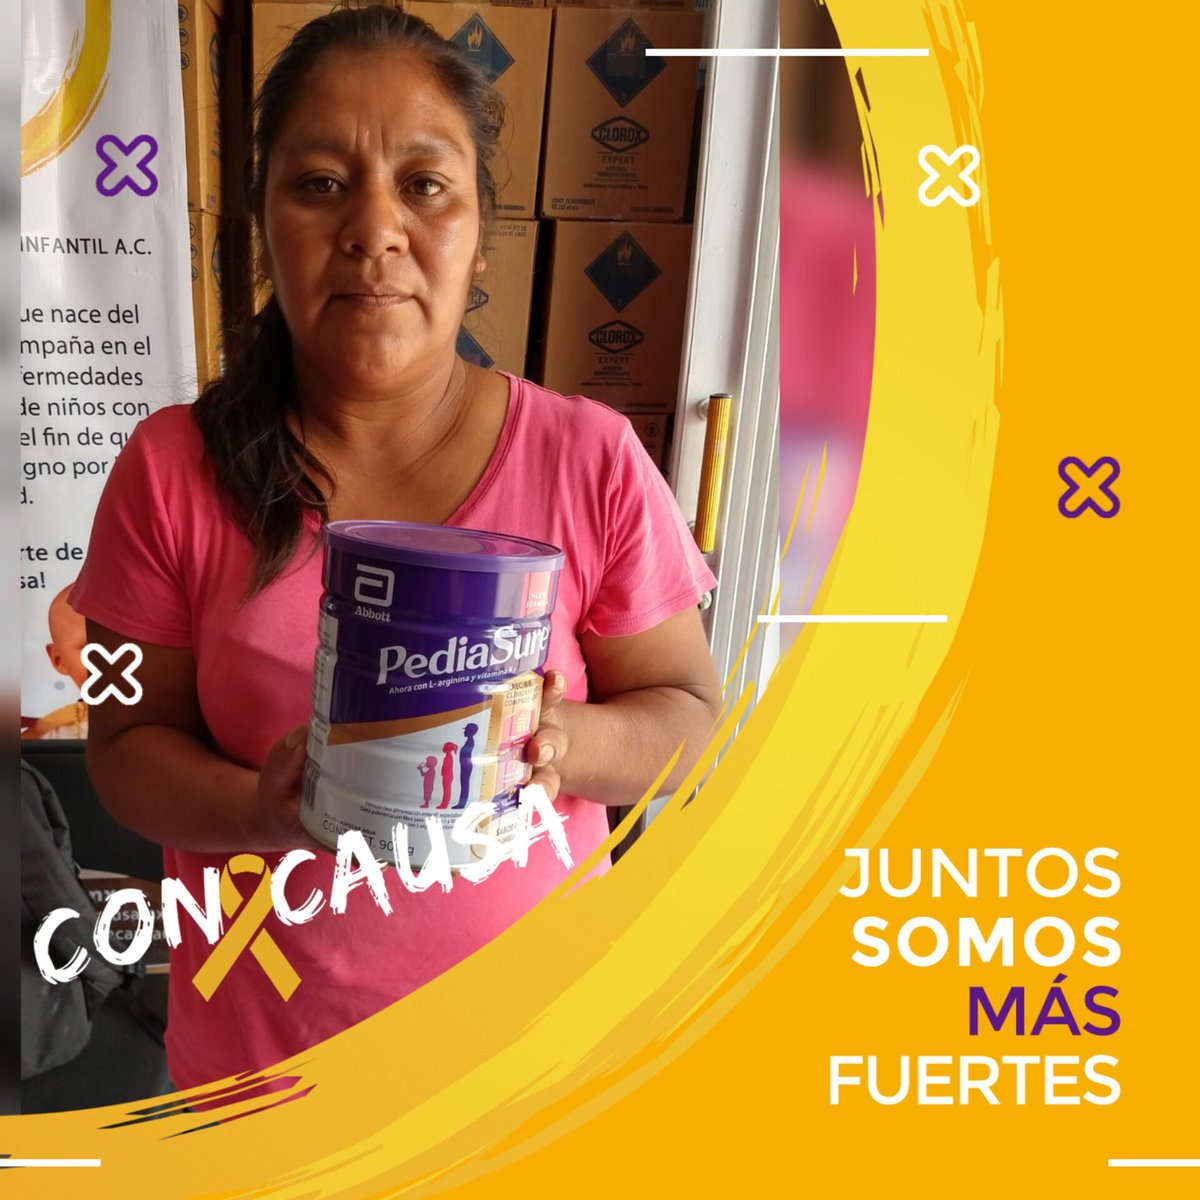 Entregamos a la mamá del pequeño Paulino la lata de Pediasure que le recetaron y que le ayudará mucho en su nutrición durante el tratamiento. Gracias a nuestra amiga Montserrat Arreola que hizo esta donación posible ❤️🎗️ #ConCausa #Oaxaca